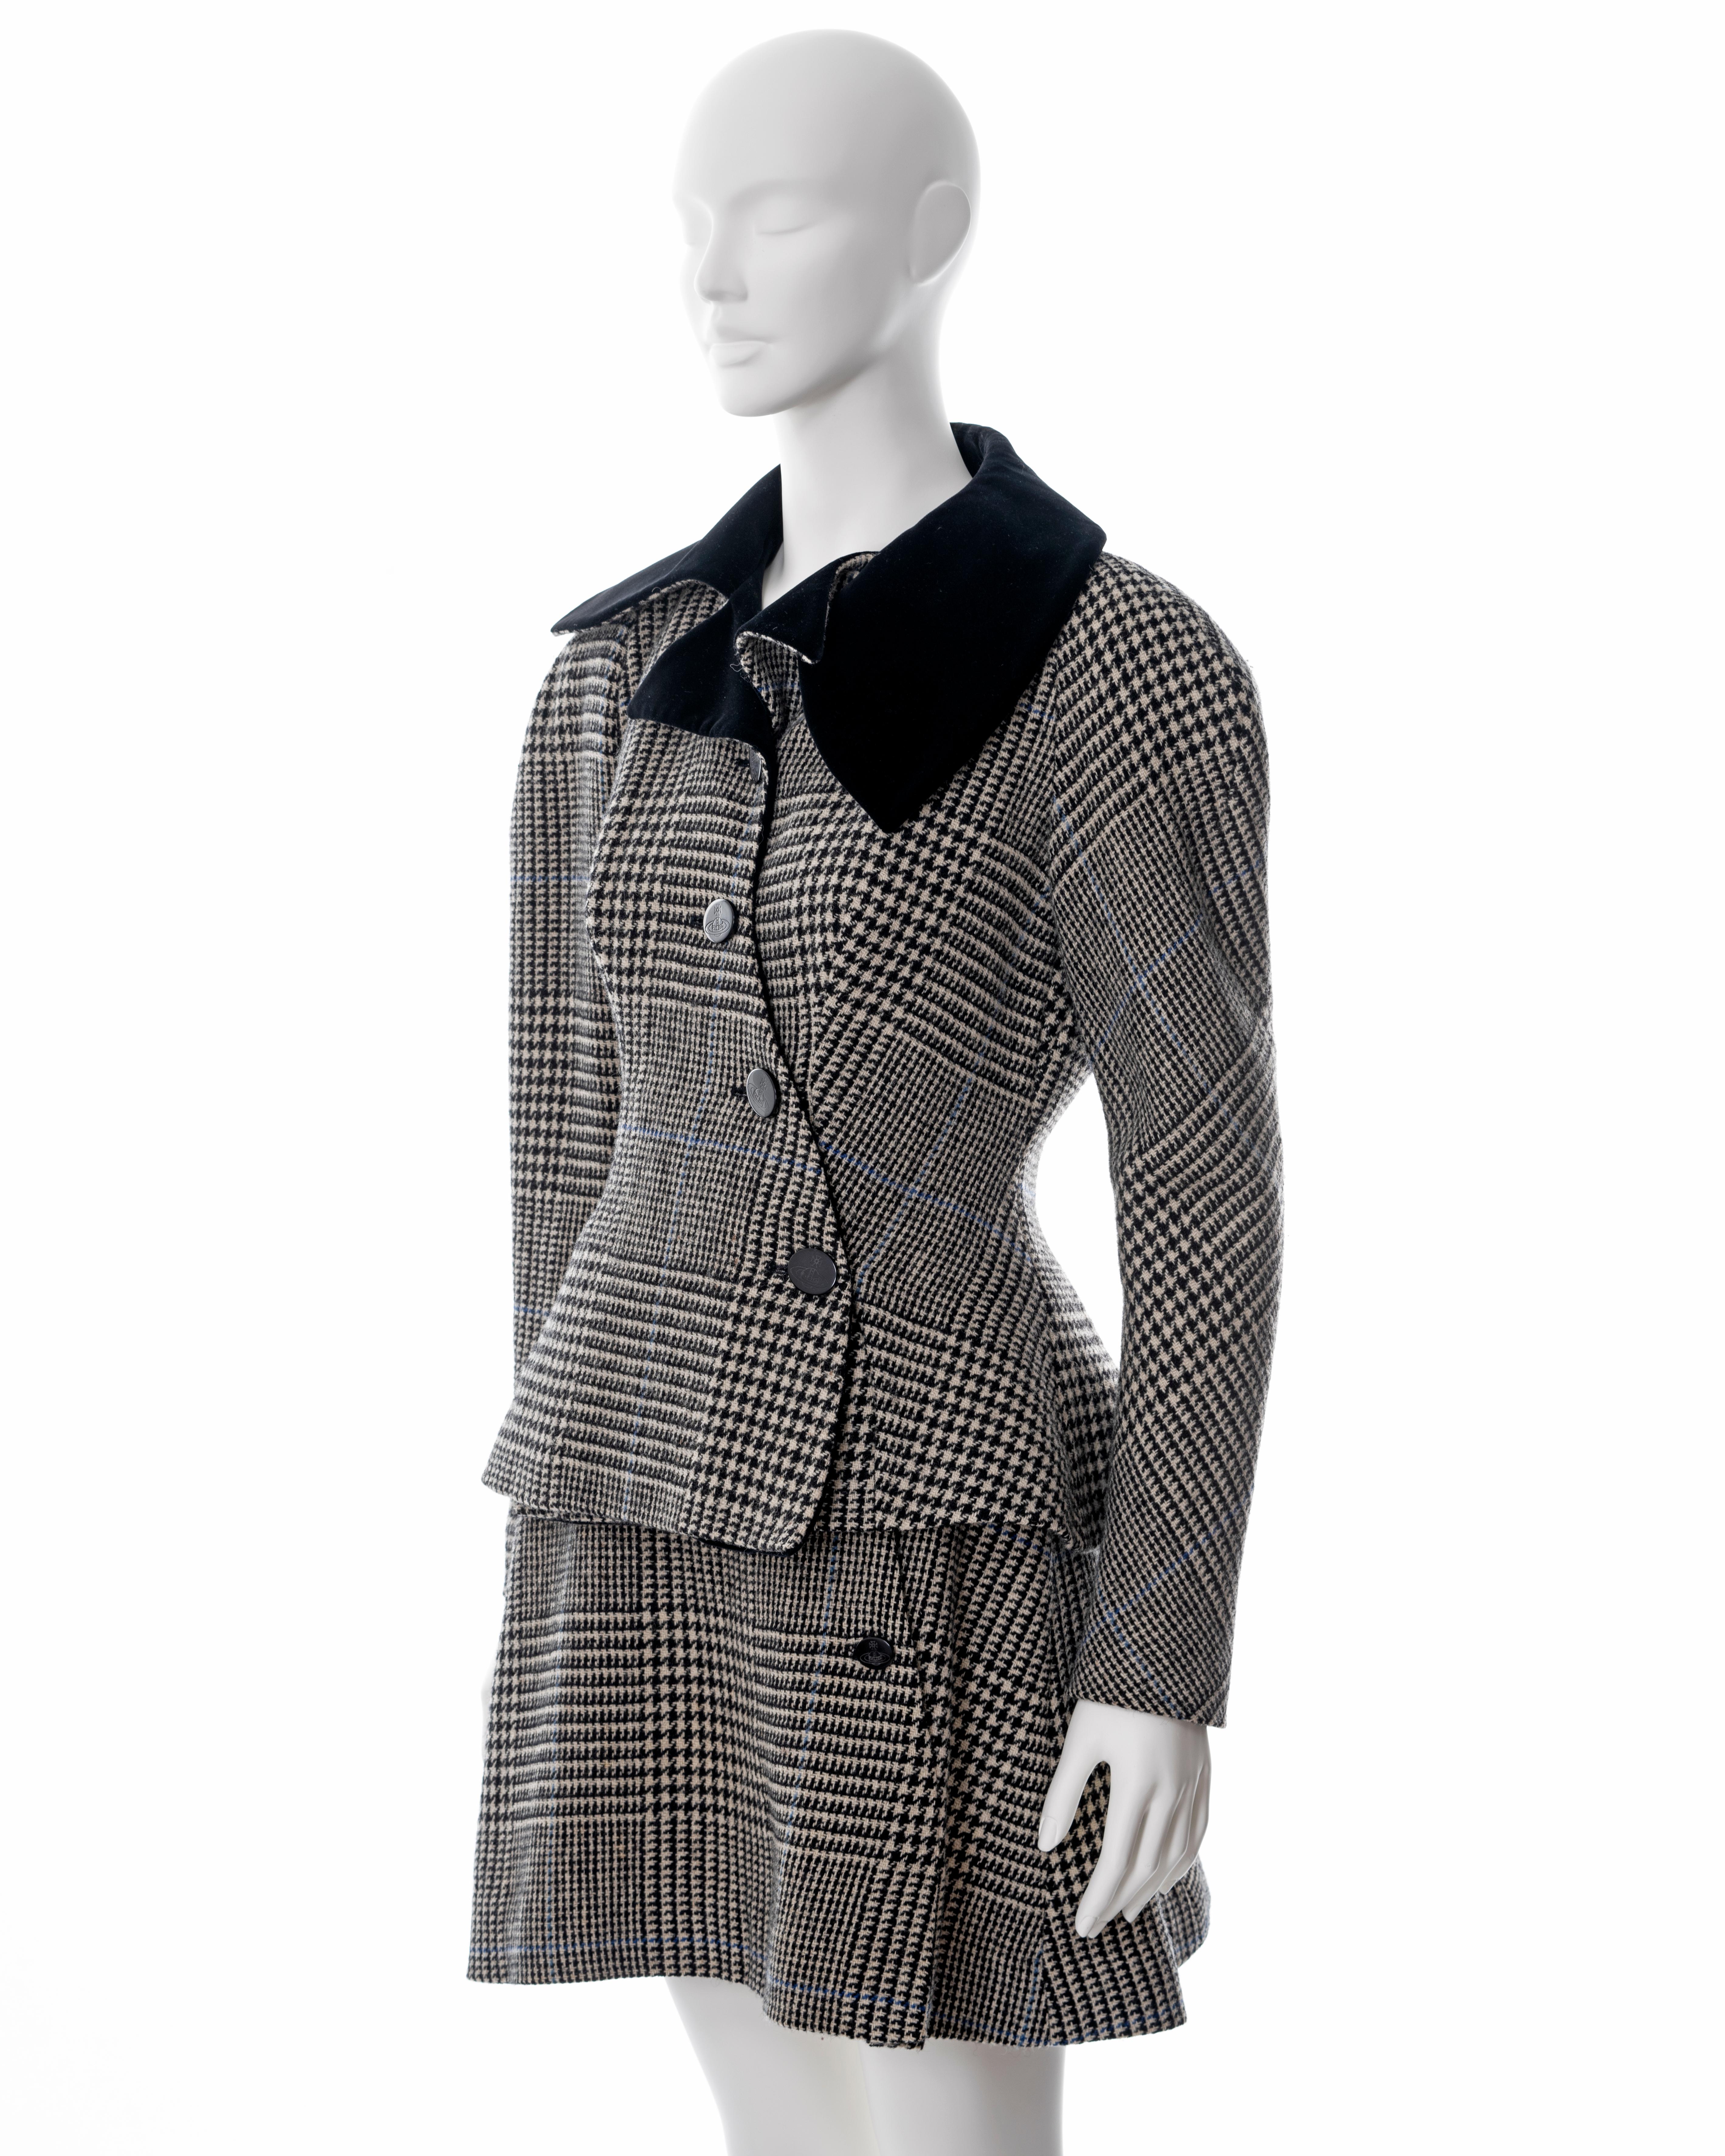 Vivienne Westwood grey houndstooth check tweed skirt suit, fw 1996 5